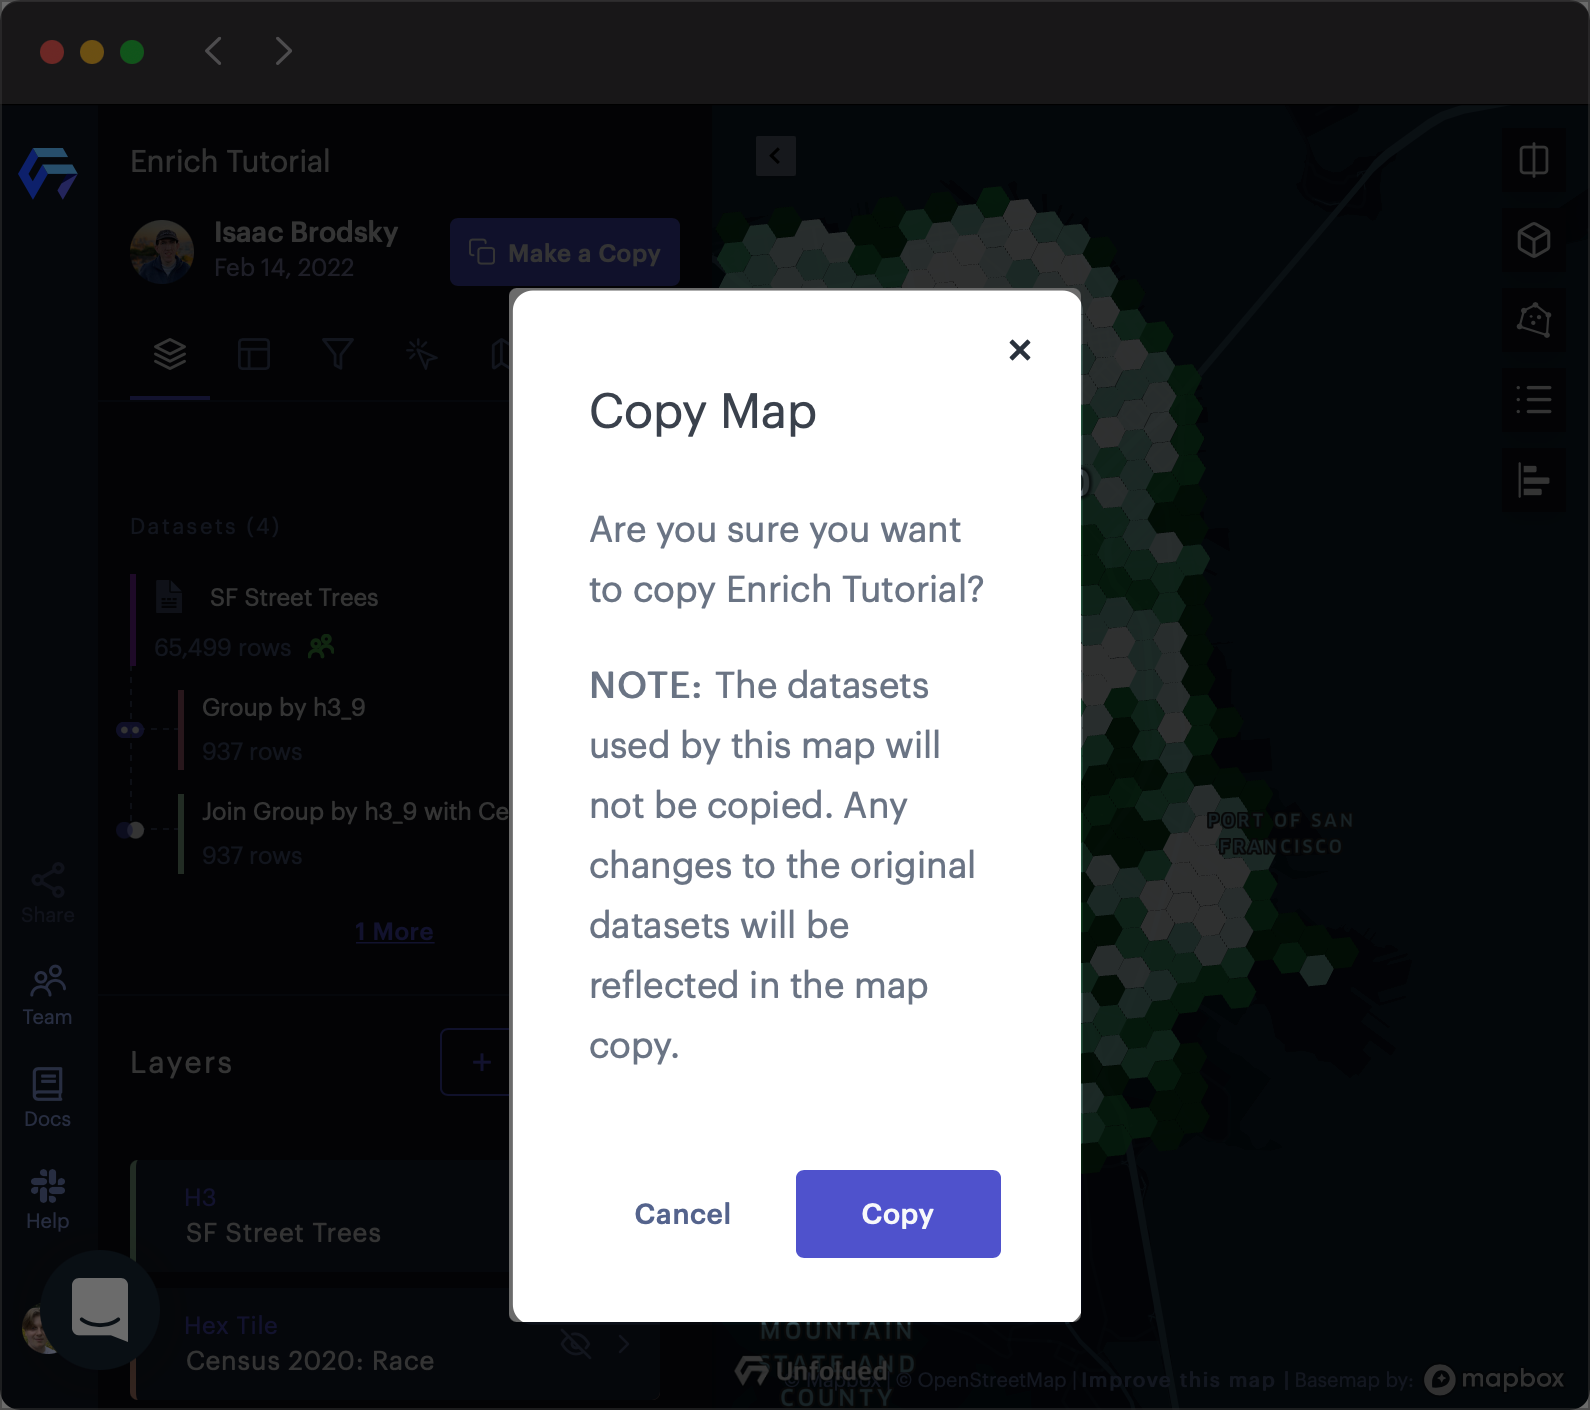 The Copy Map confirmation window in Foursquare Studio.